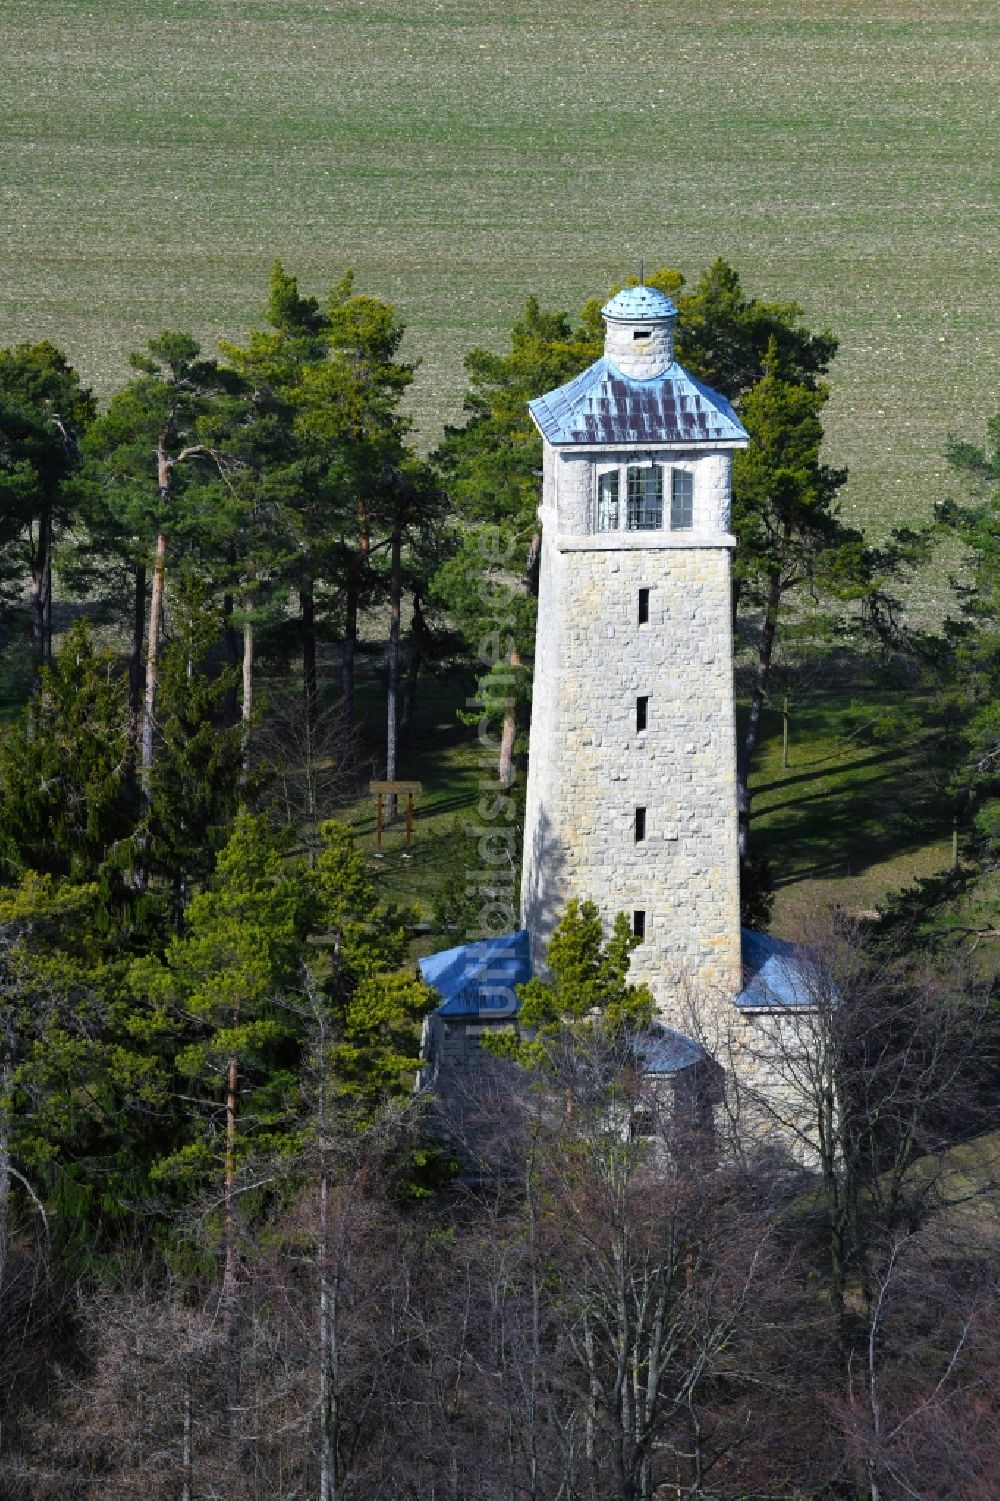 Kiliansroda von oben - Aussichtsturm Carolinenturm bei Kiliansroda im Bundesland Thüringen, Deutschland